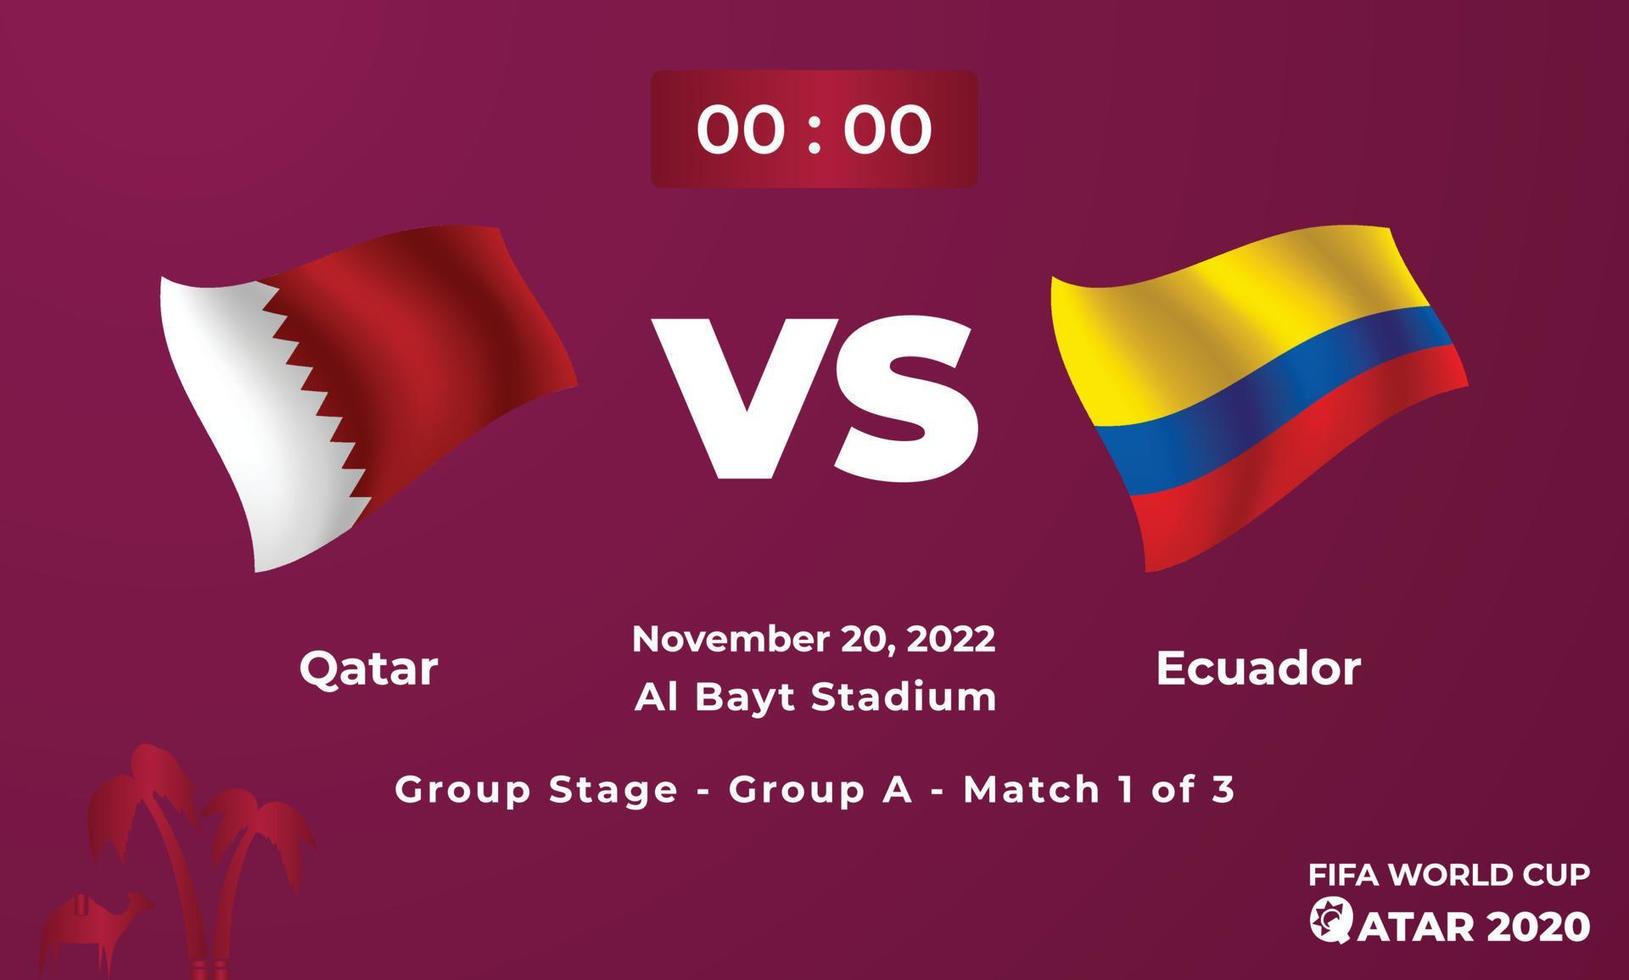 plantilla de partido de fútbol qatar vs ecuador, copa mundial de la fifa en qatar 2022 vector